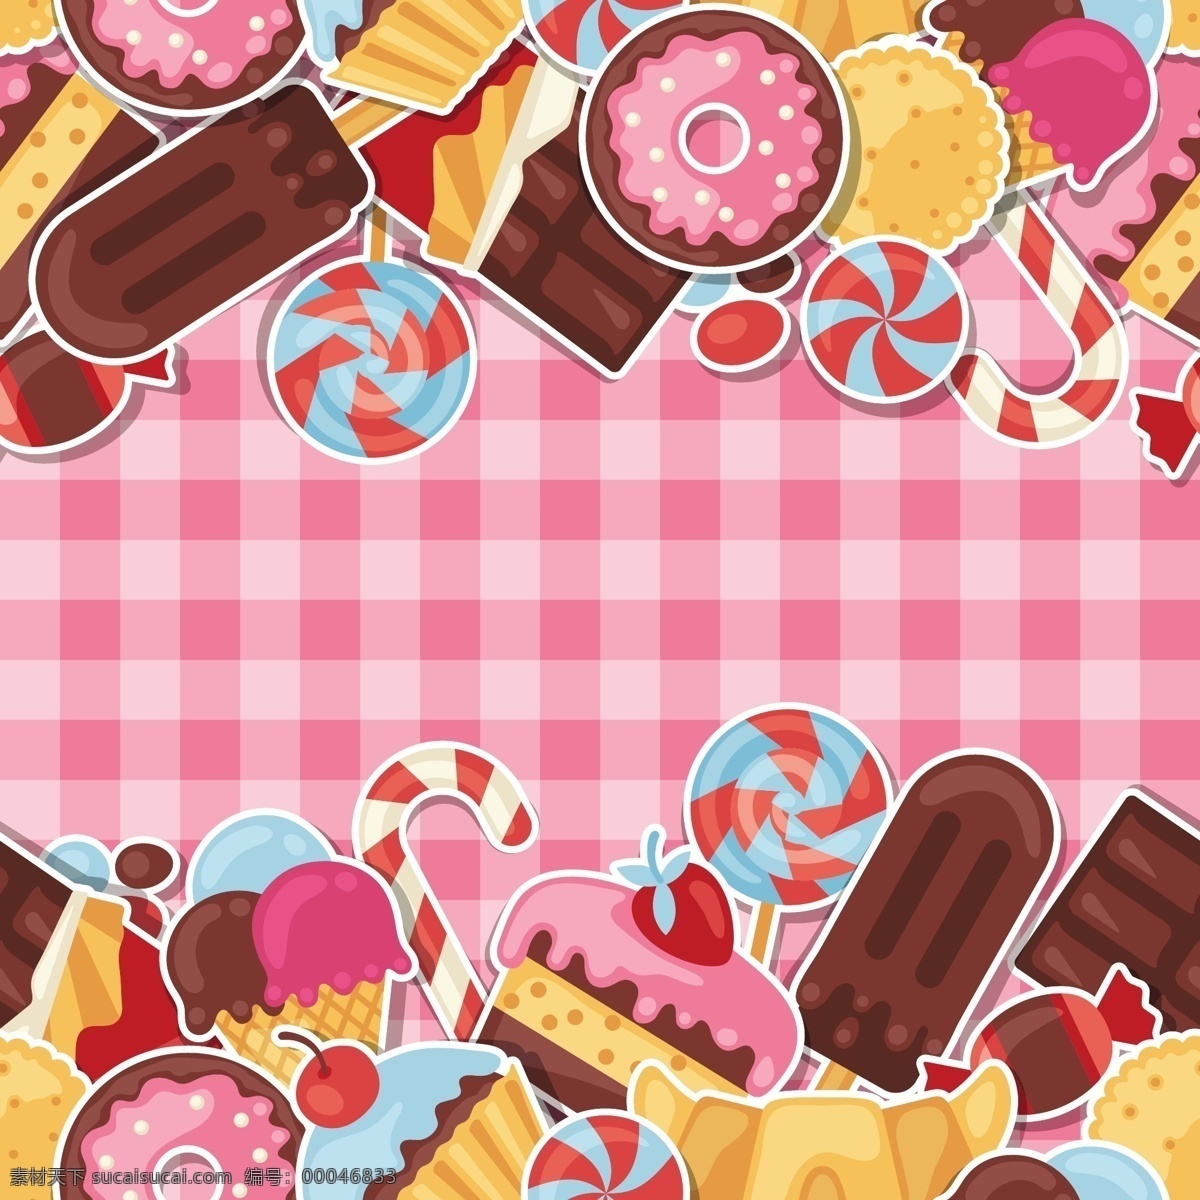 可爱 甜甜 圈 卡通 甜点 矢量图 糕点 背景素材 源文件 矢量 免费素材 曲奇 贺卡背景 广告元素